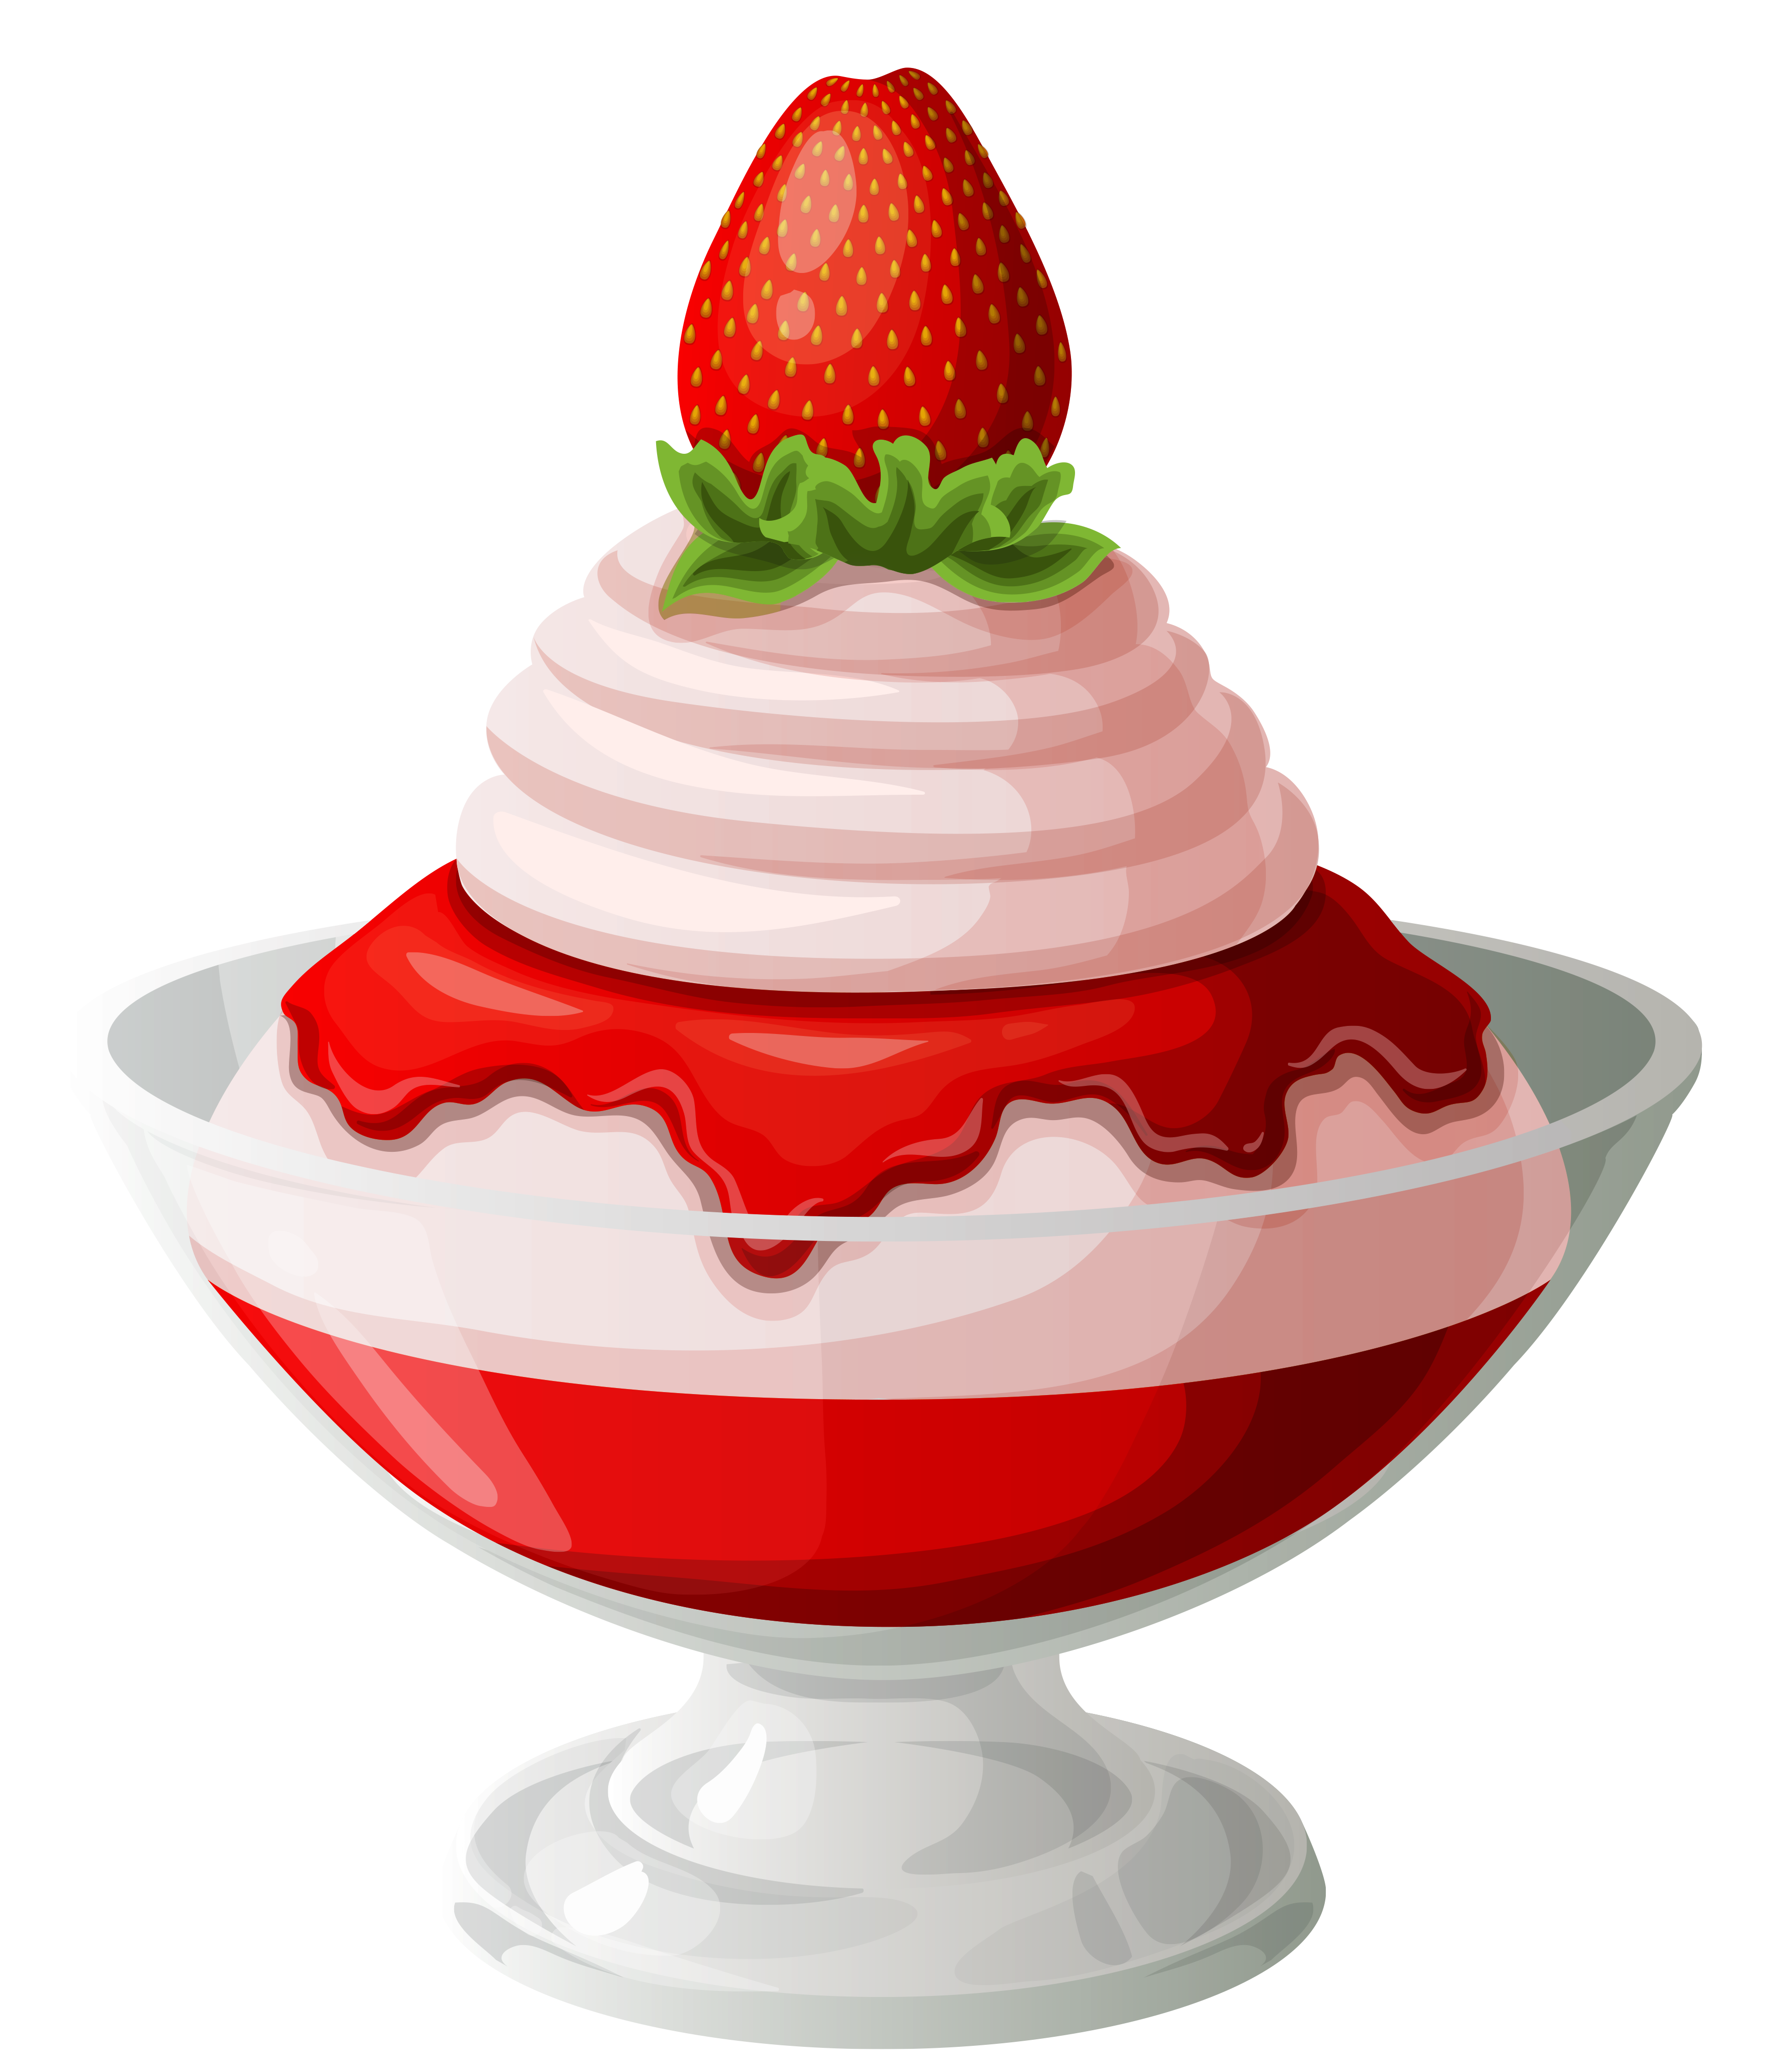 Yogurt clipart cute. Strawberry ice cream sundae